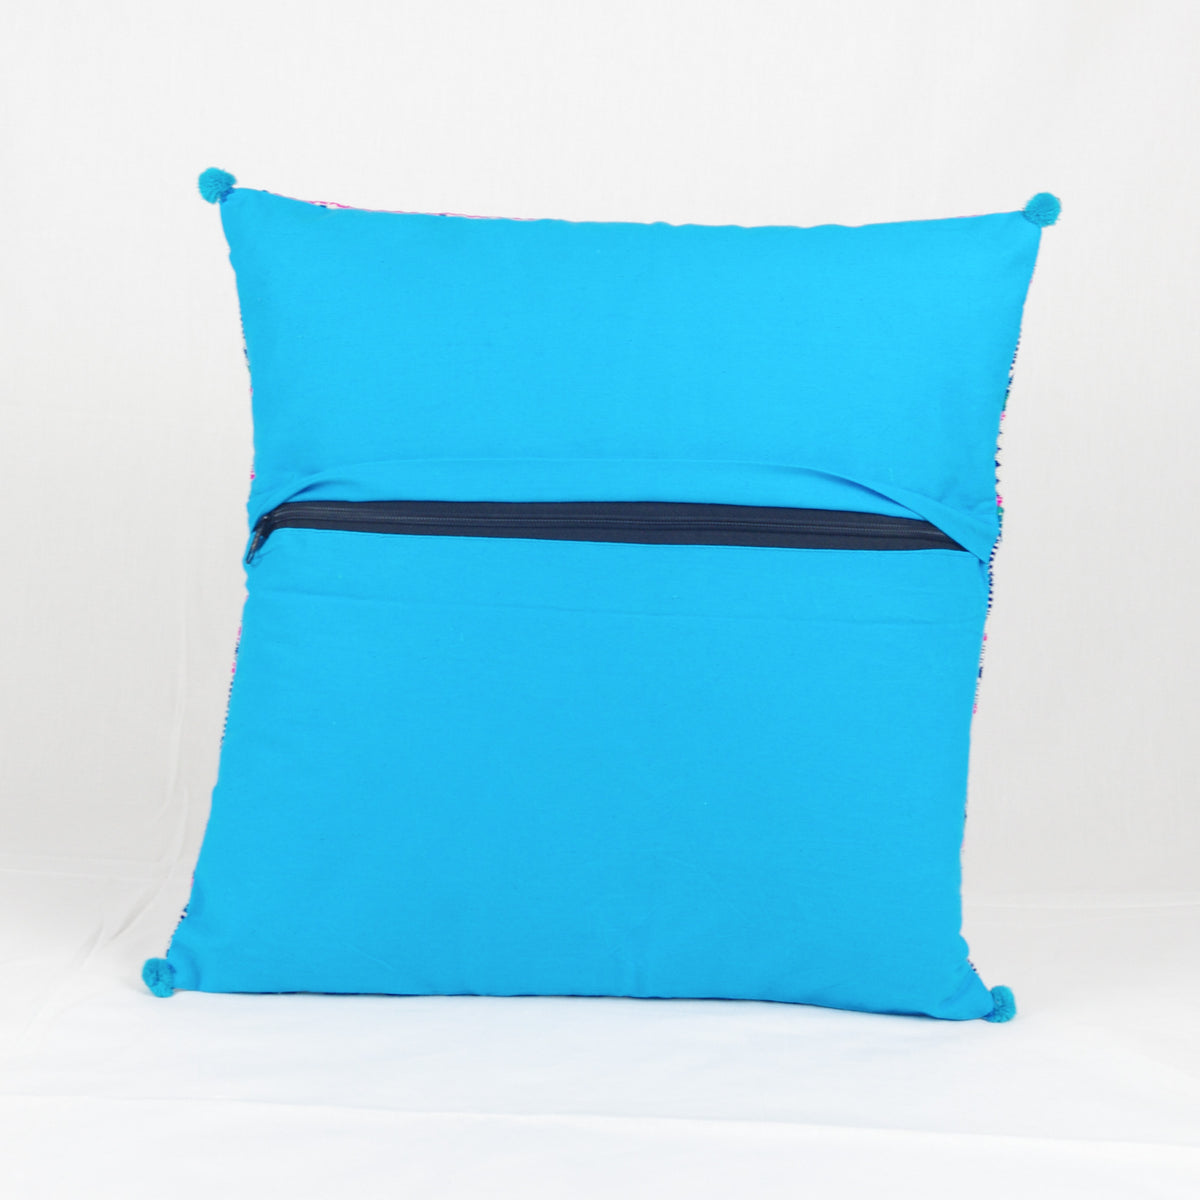 Bohemian Handloom Cotton Cushion Cover - Blue